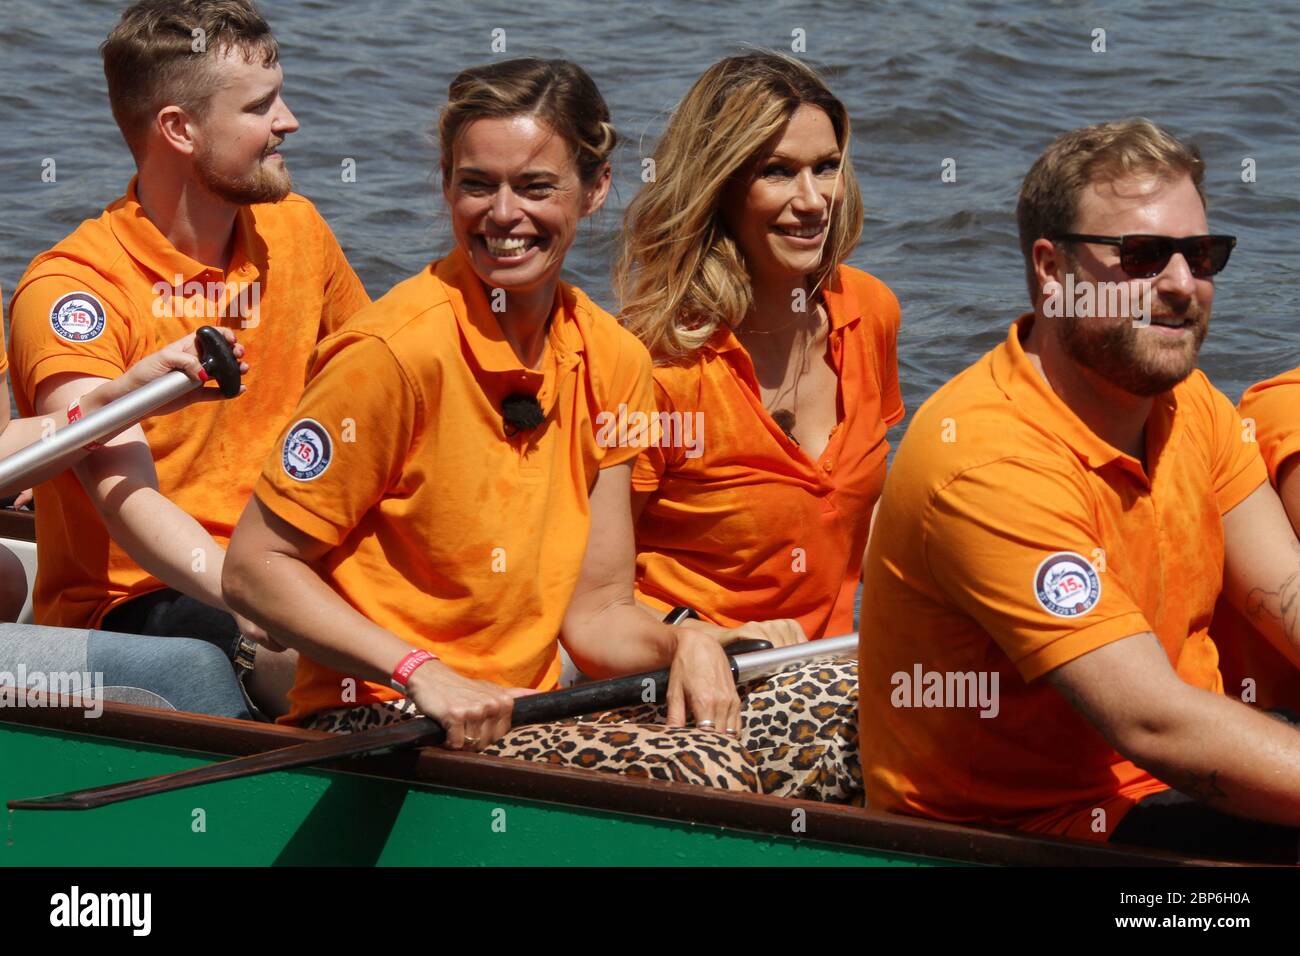 Susanne Boehm,Yasmina Filali,Carrera de barcos de dragón de la Fundación Michael Stich,Alexa am Alster,Hamburgo,14.06.2019 Foto de stock